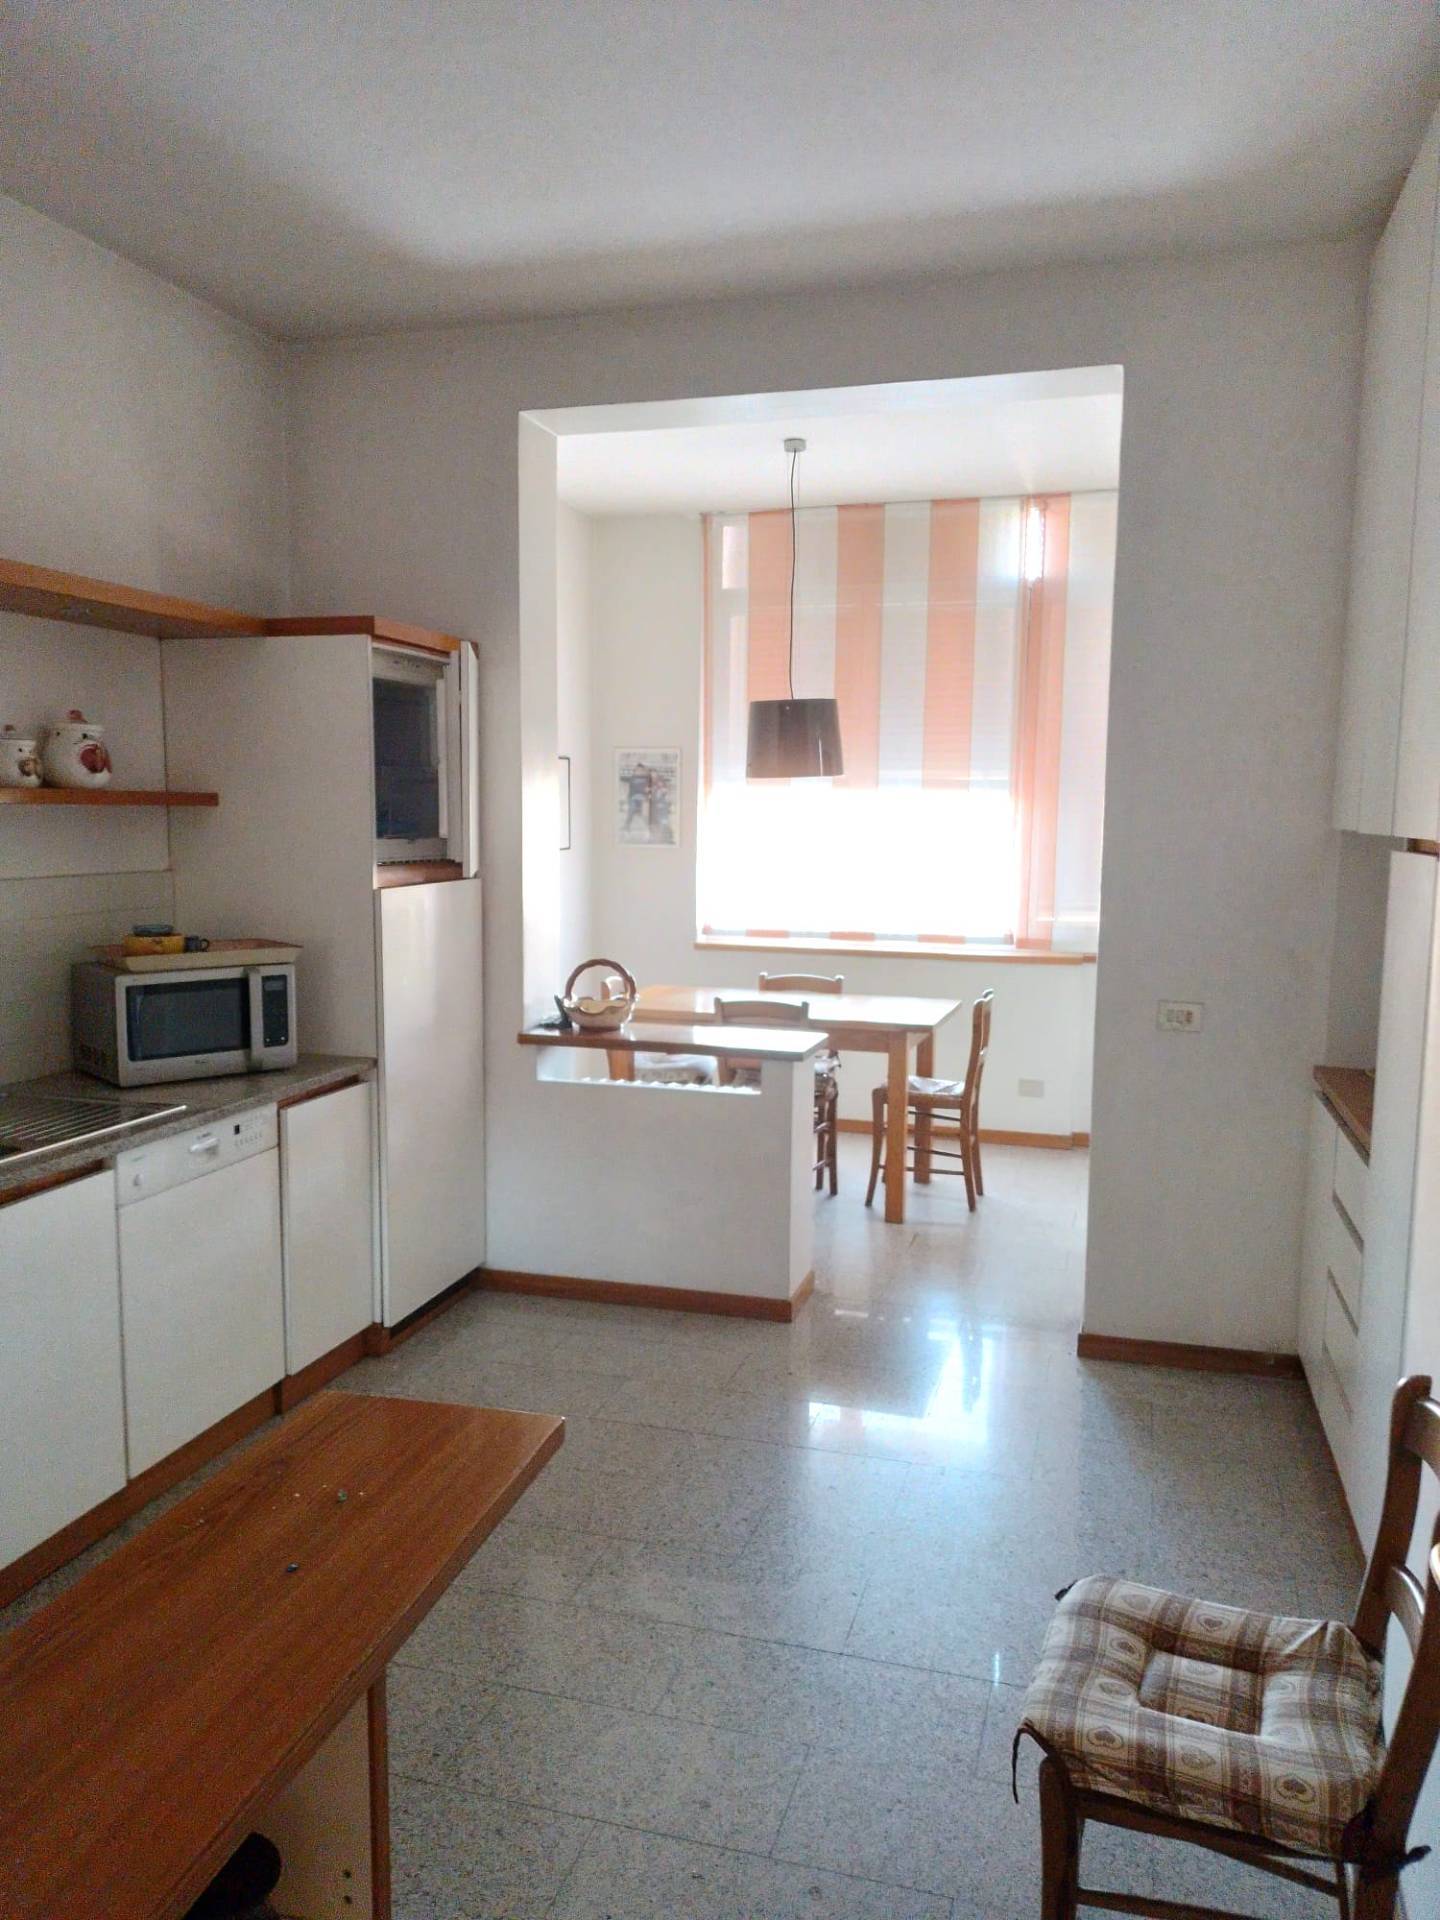 Appartamento arredato in affitto, Firenze legnaia